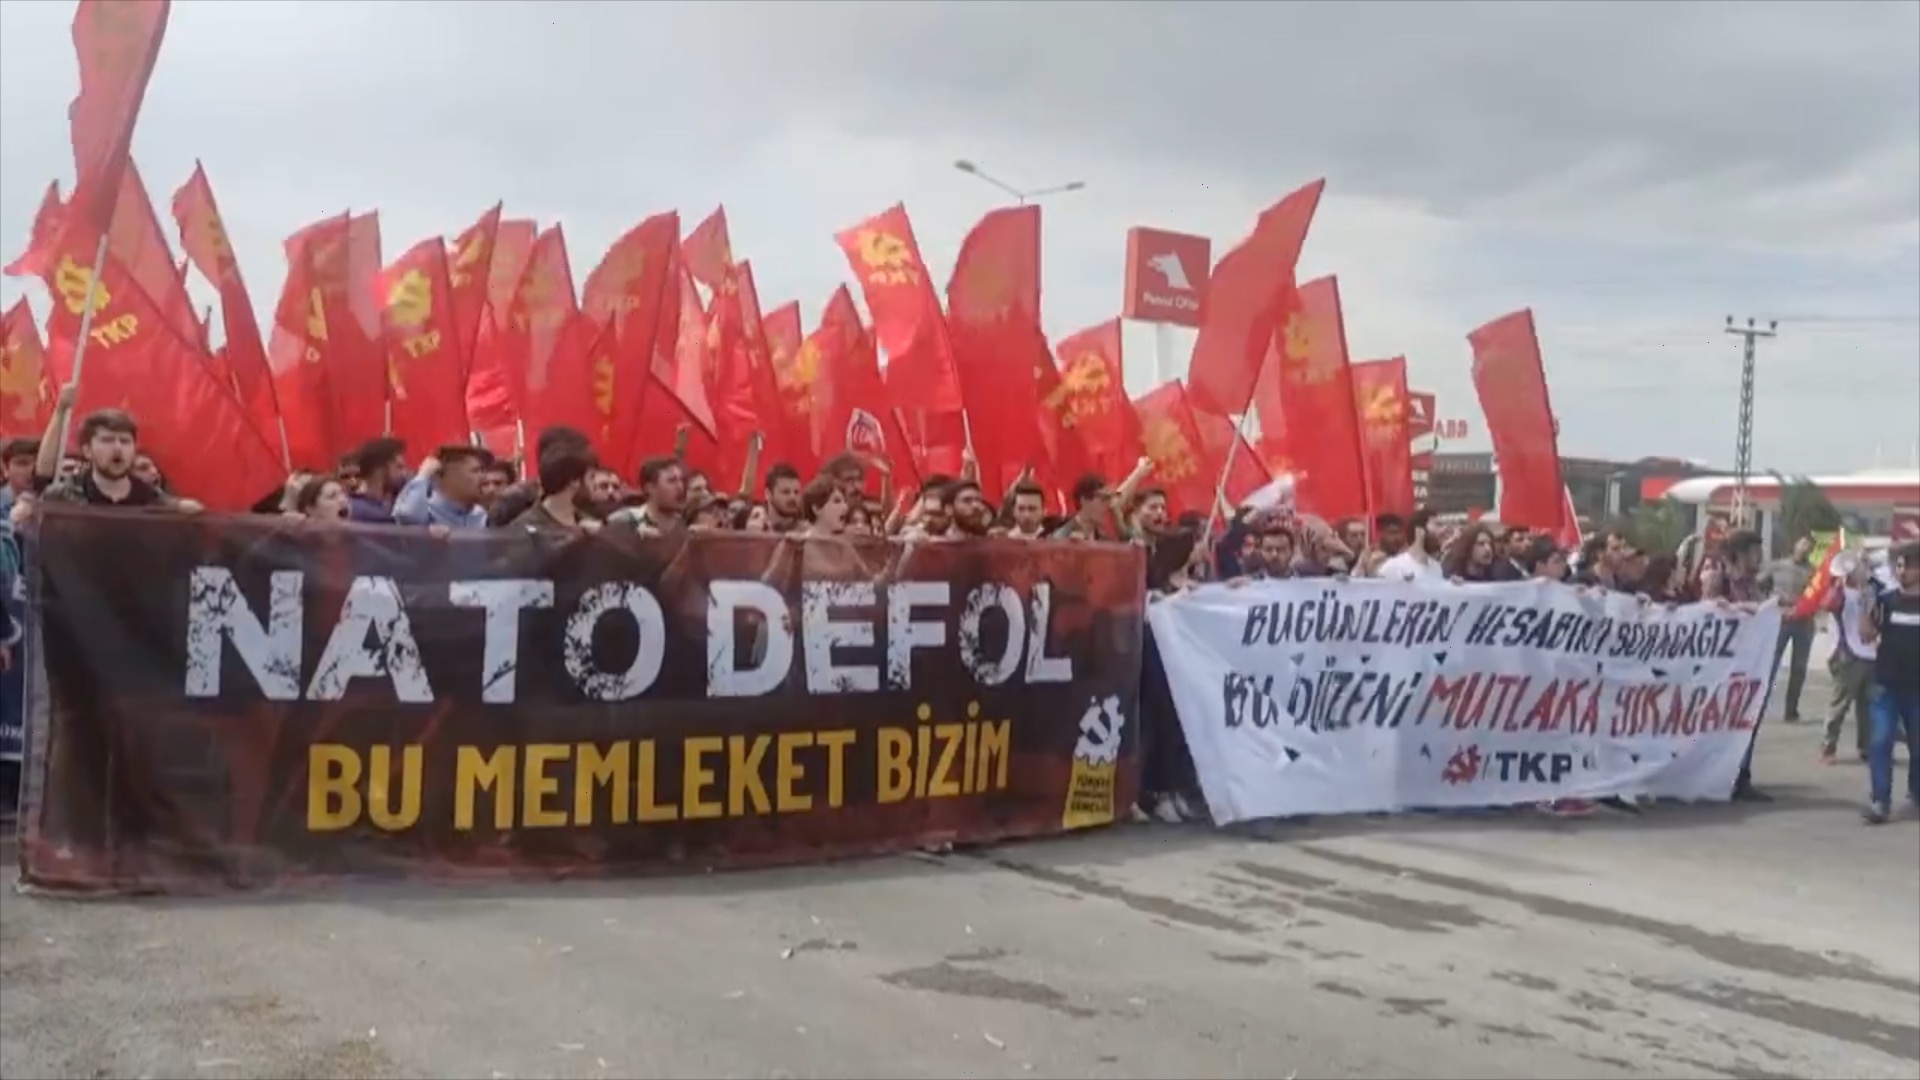 Антинатовские протесты в районе турецкой базы Инджирлик, где предположительно складированы ядерные авиабомбы США, май 2022 г.